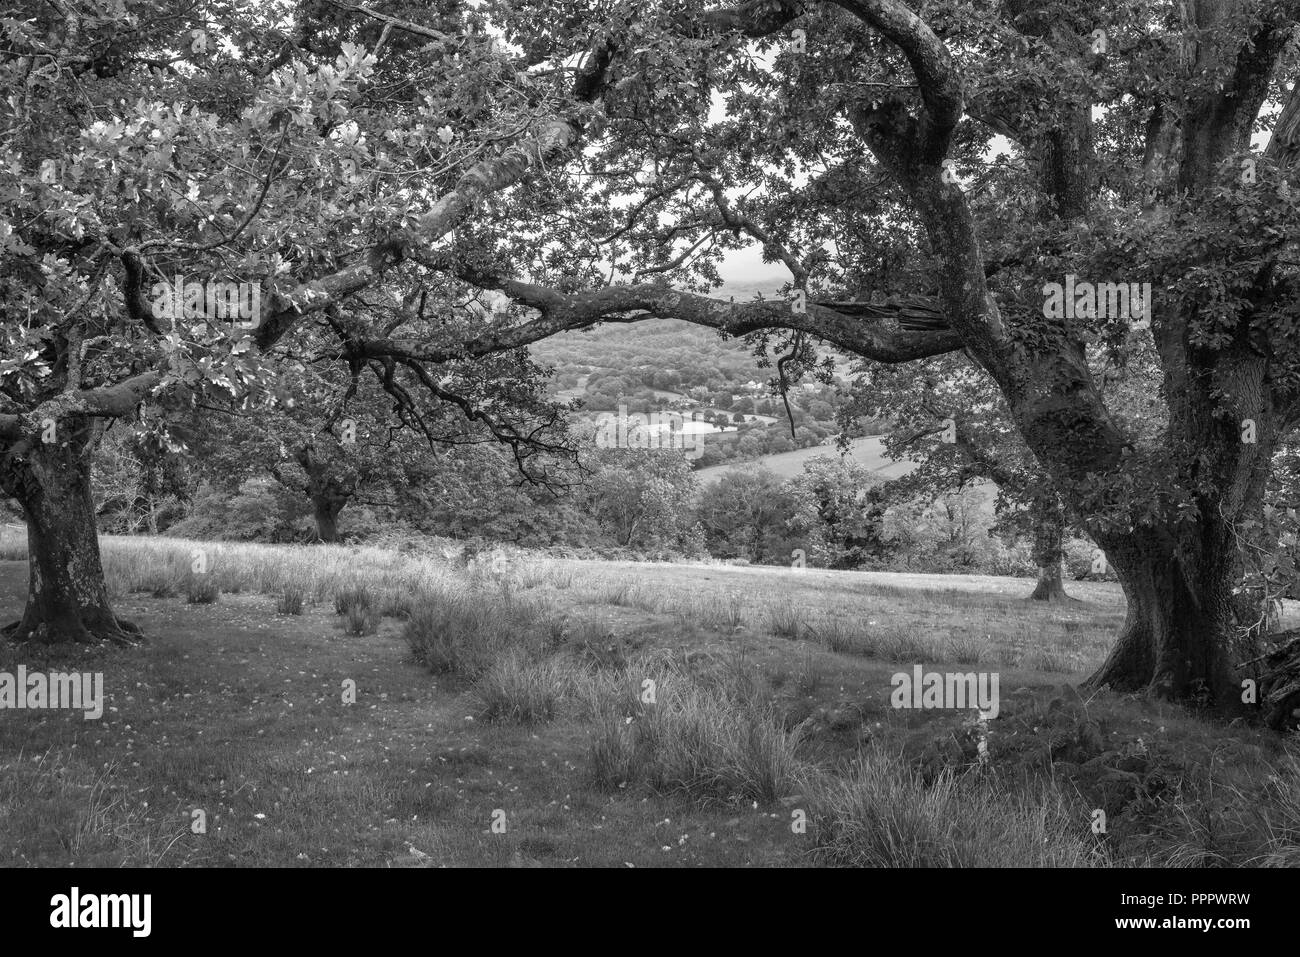 Schwarze und weiße schöne Landschaft Bild der Blick vom Abgrund weg in Snowdonia mit Blick auf Hirtshals und Coed-y-Brenin Wald während der regnerischen afternoo Stockfoto